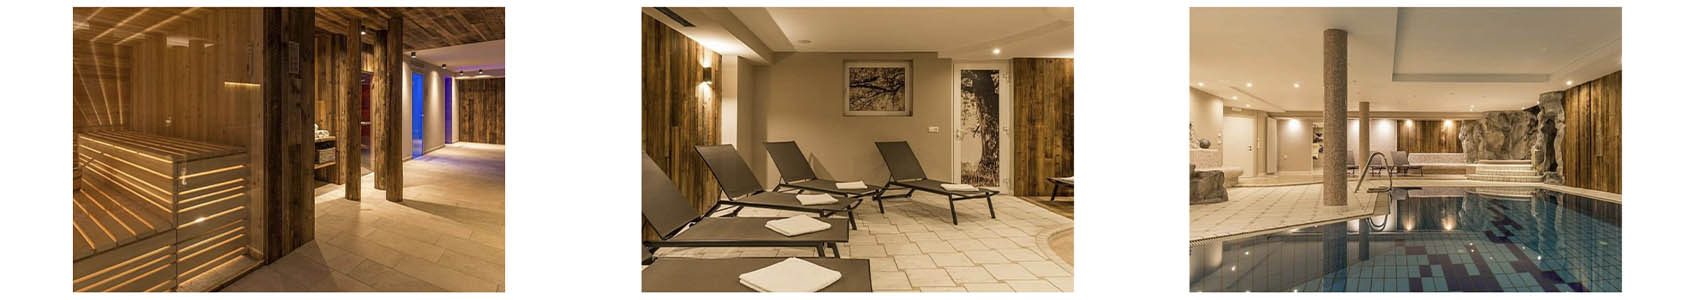 3 photos de l'hôtel, le sauna, la salle de piscine intérieur avec les transats et la piscine intérieur